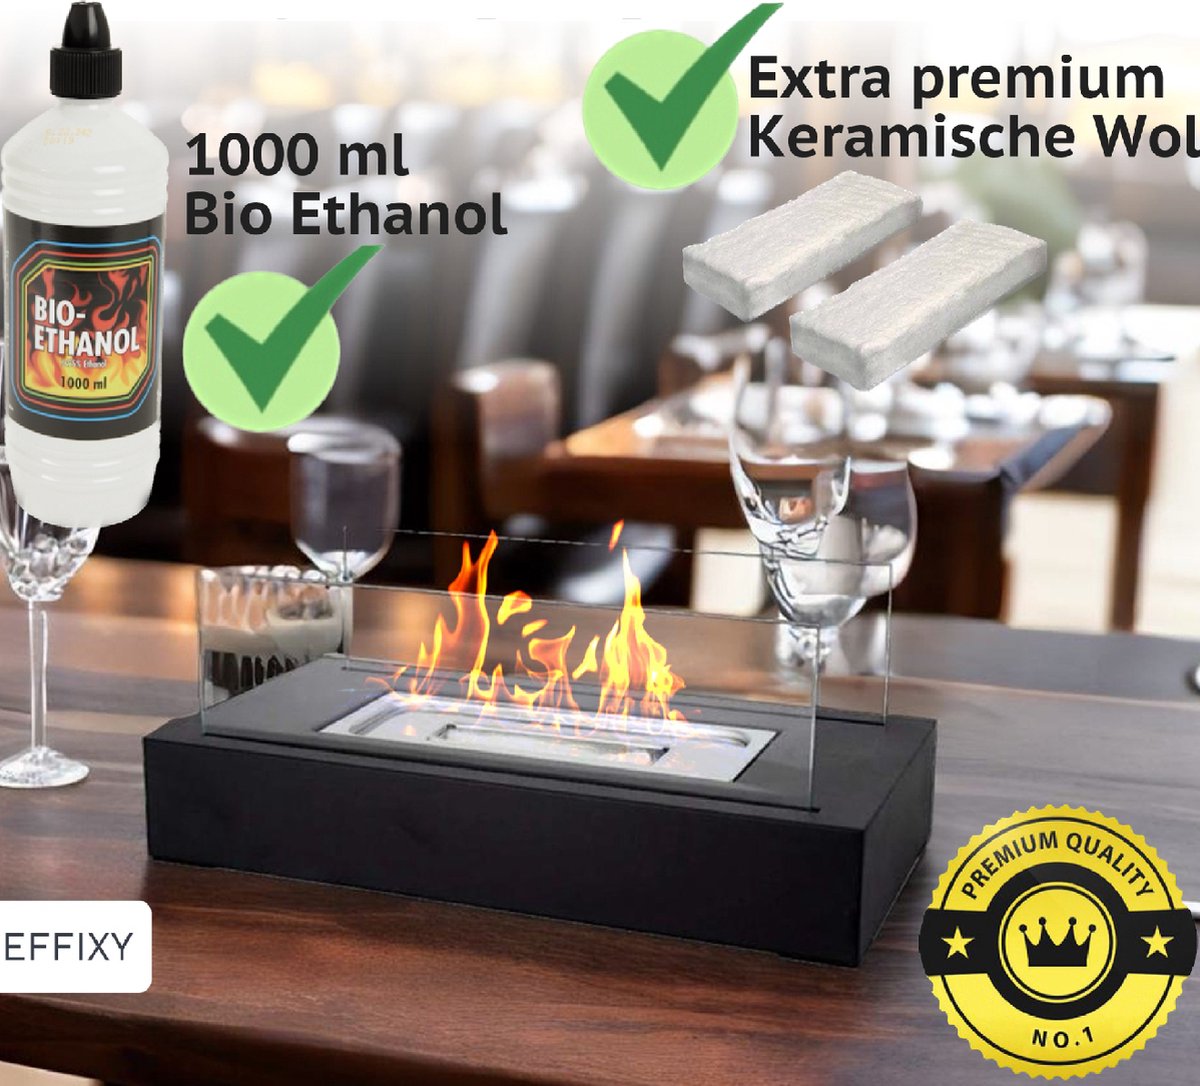 EFFIXY® - Bio Ethanol Tafelhaard - INCLUSIEF 1000 ml Bio Ethanol & Premium keramische wol - 1 jaar garantie - Sfeerhaard - Terrashaard - Tafelbrander